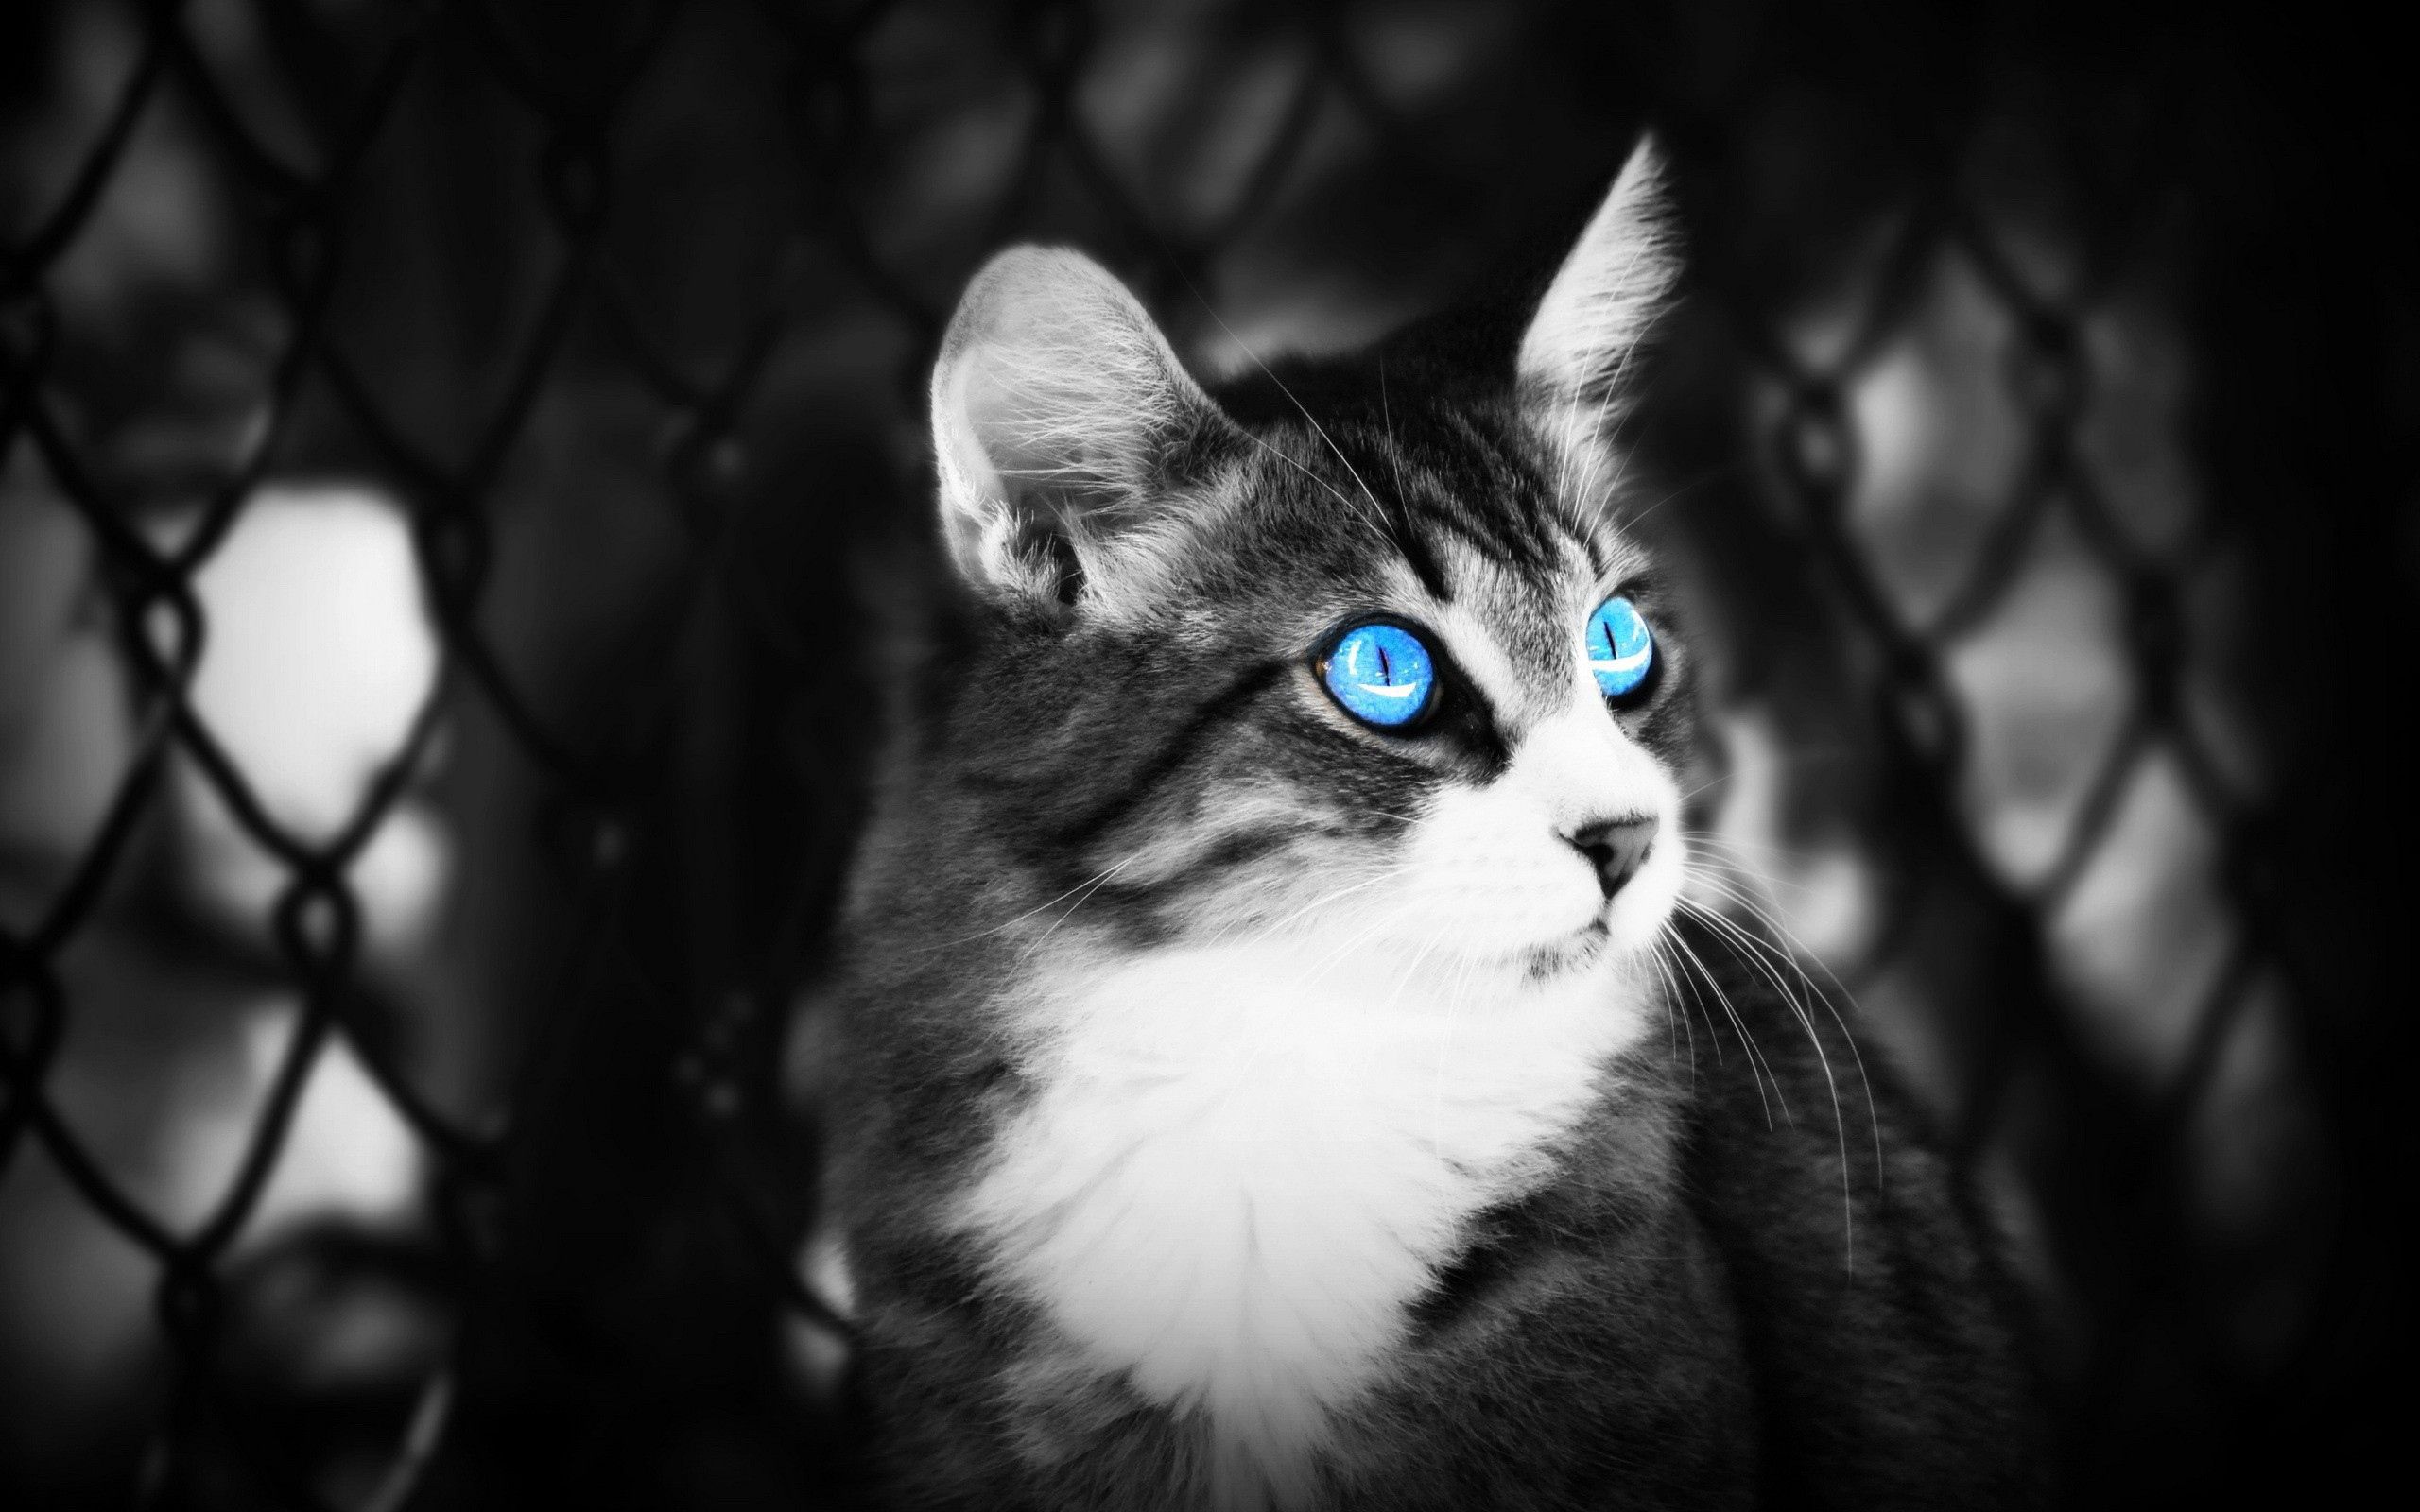 Descarga gratuita de fondo de pantalla para móvil de Gato, Tumbarse, Bw, Mentir, Chb, De Ojos Azules, Animales, Ojos, Ojos Azules.